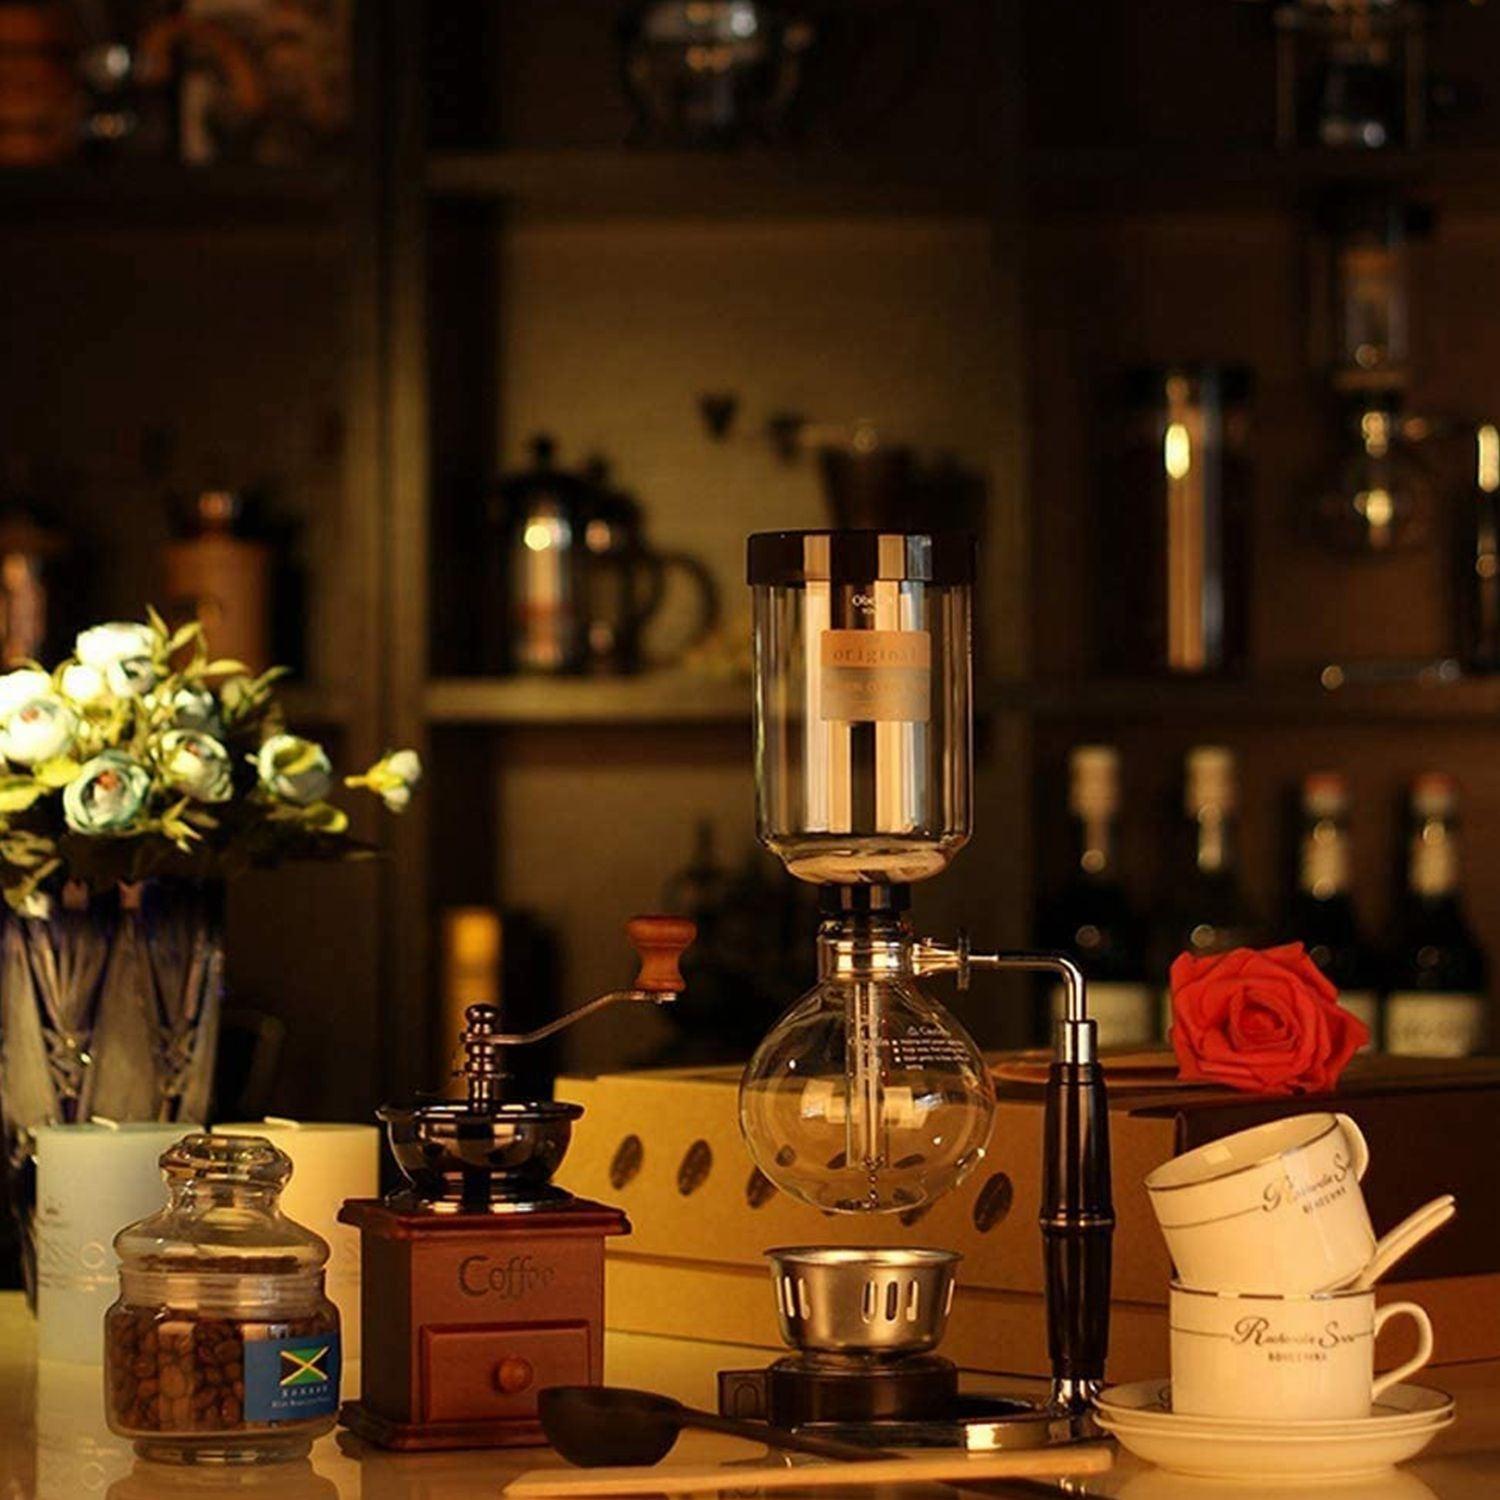 مجموعة تحضير قهوة سايفون Siphon Coffee Maker Set - COOLBABY - cG9zdDo1OTI2NjI=